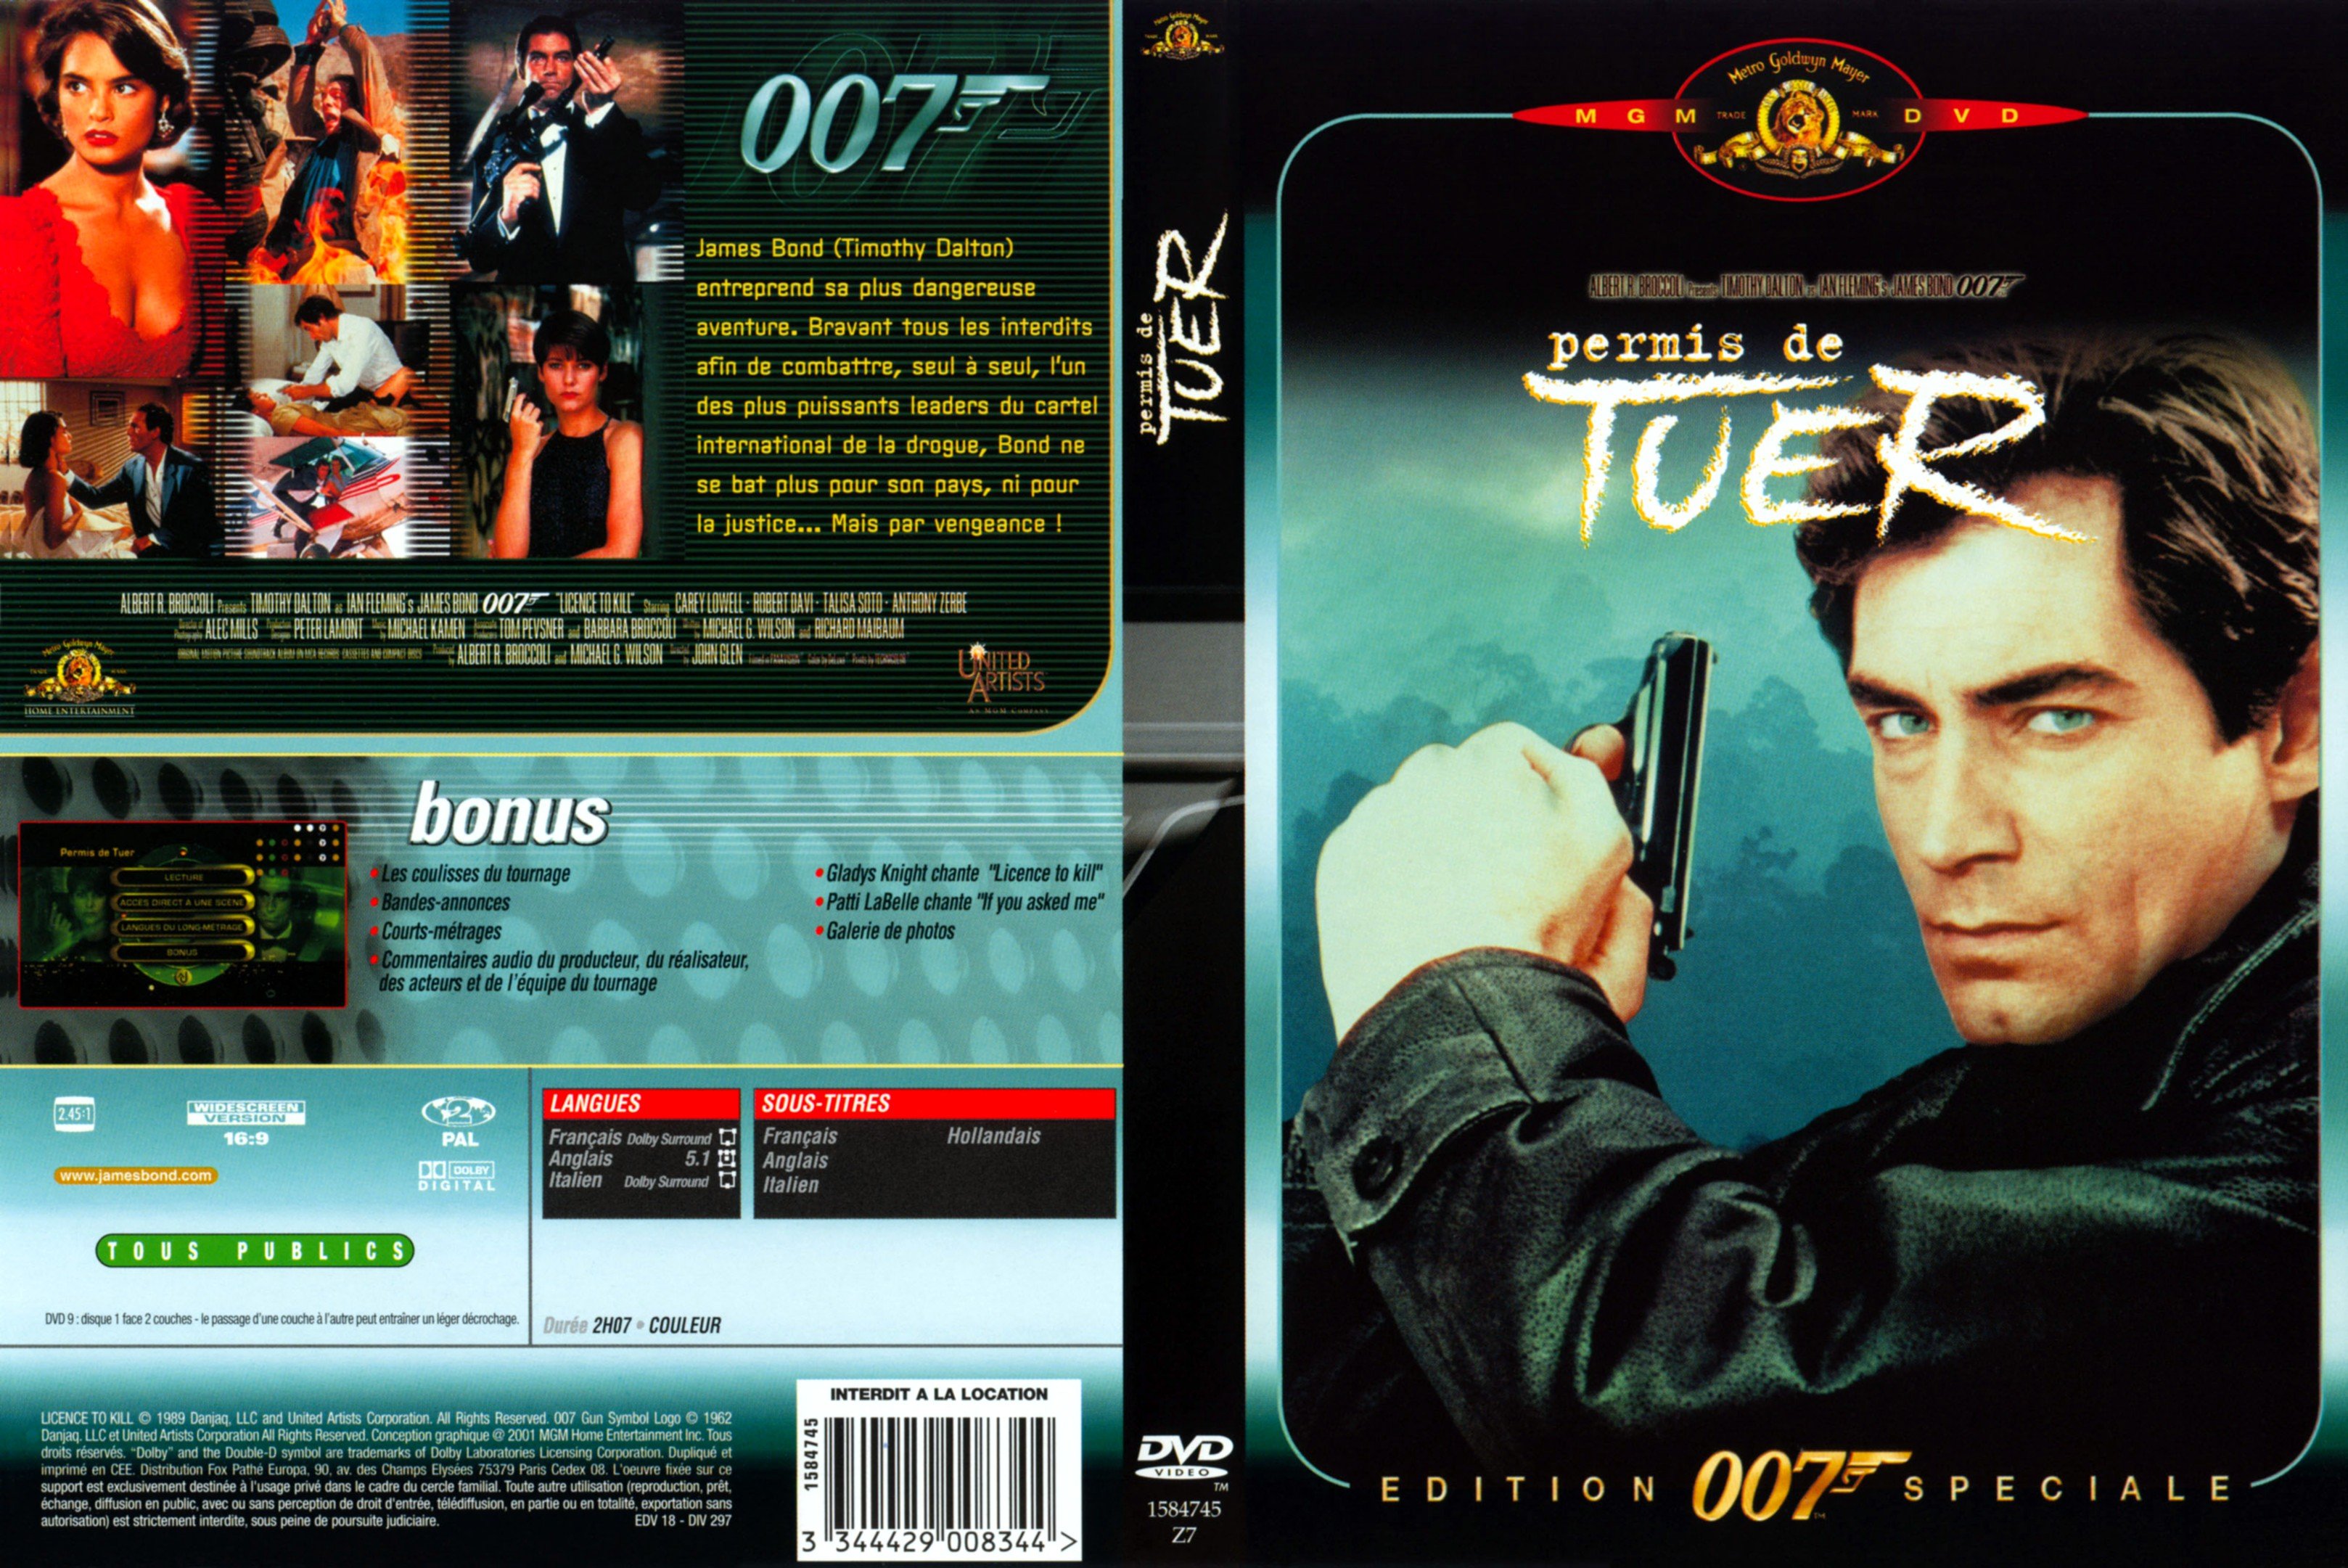 Jaquette DVD de James Bond 007 Permis de tuer - Cinéma Passion